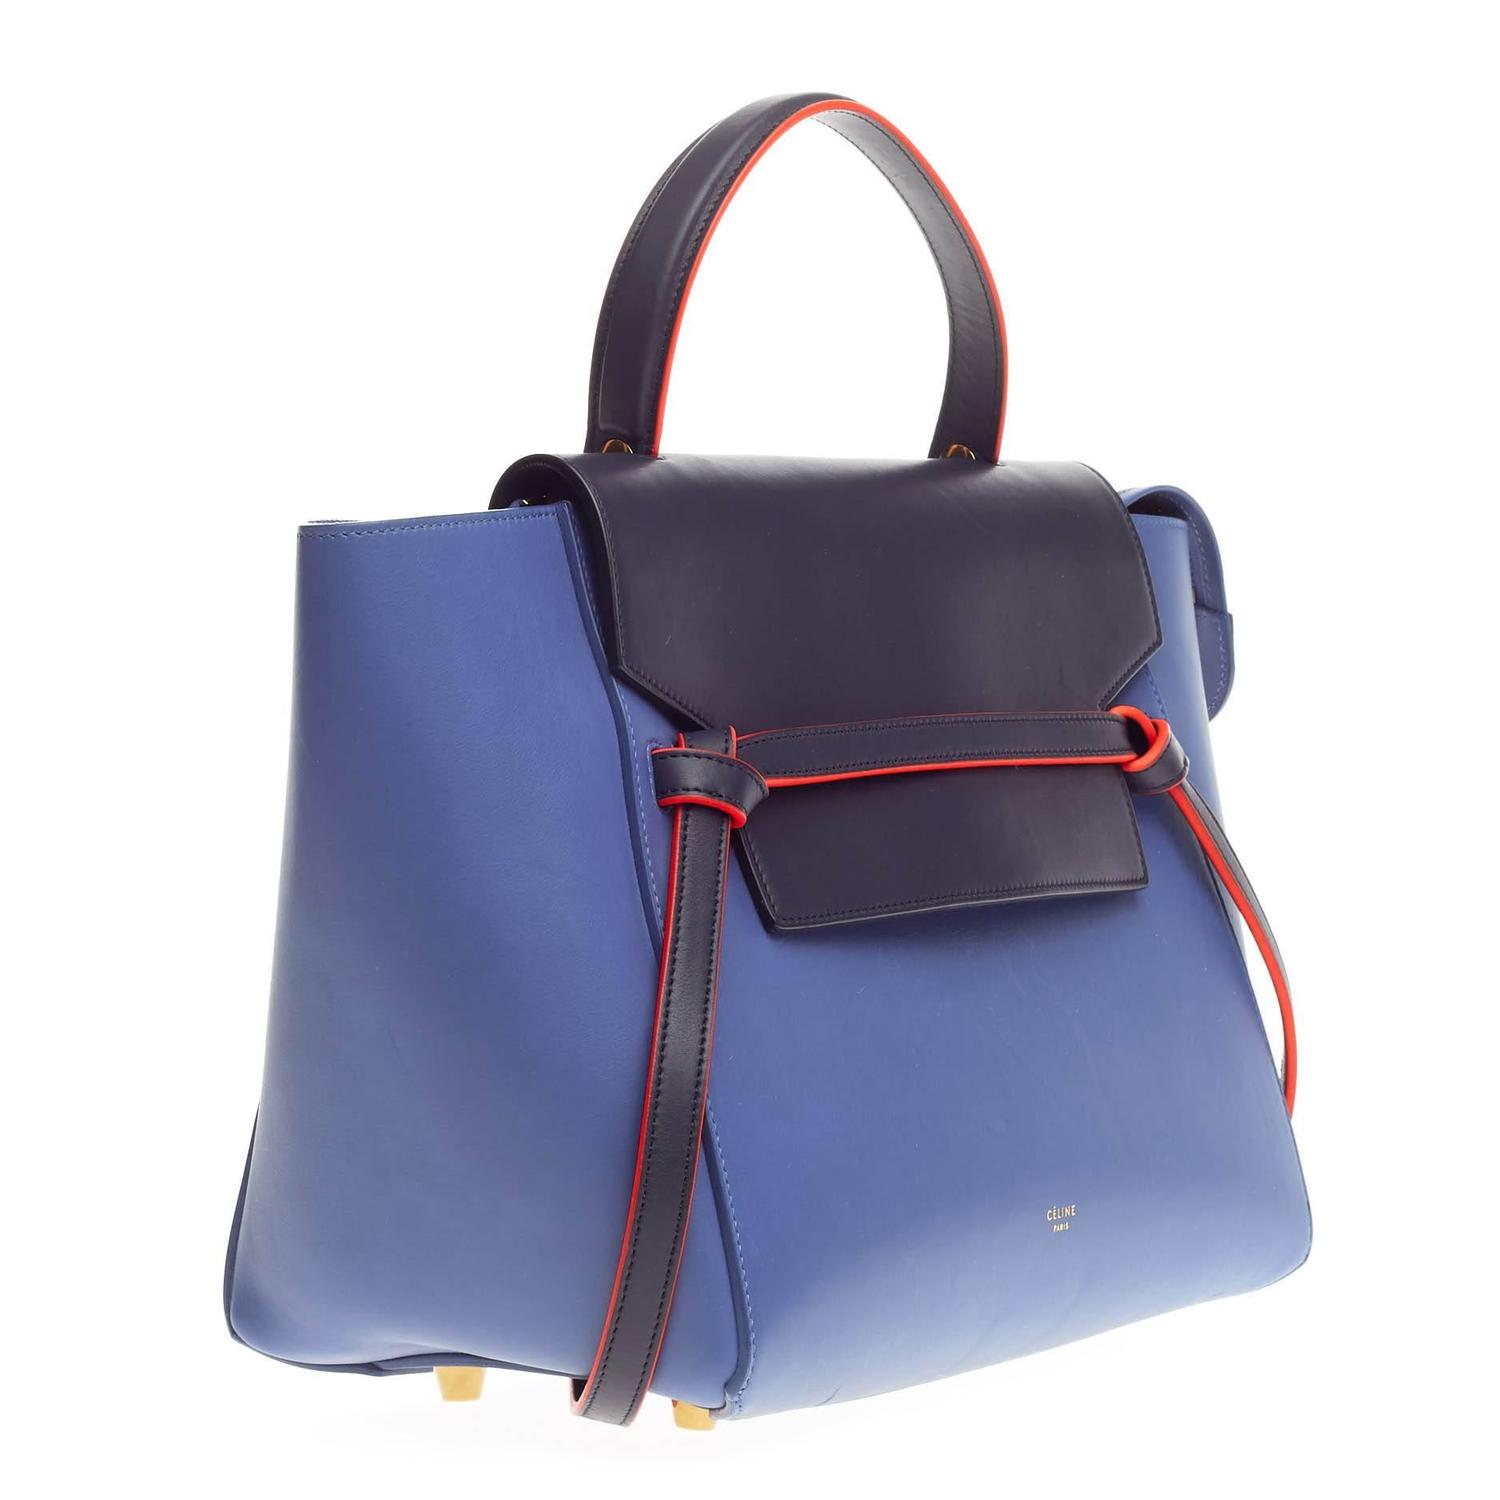 Celine Bicolor Belt Bag Leather Mini For Sale at 1stdibs